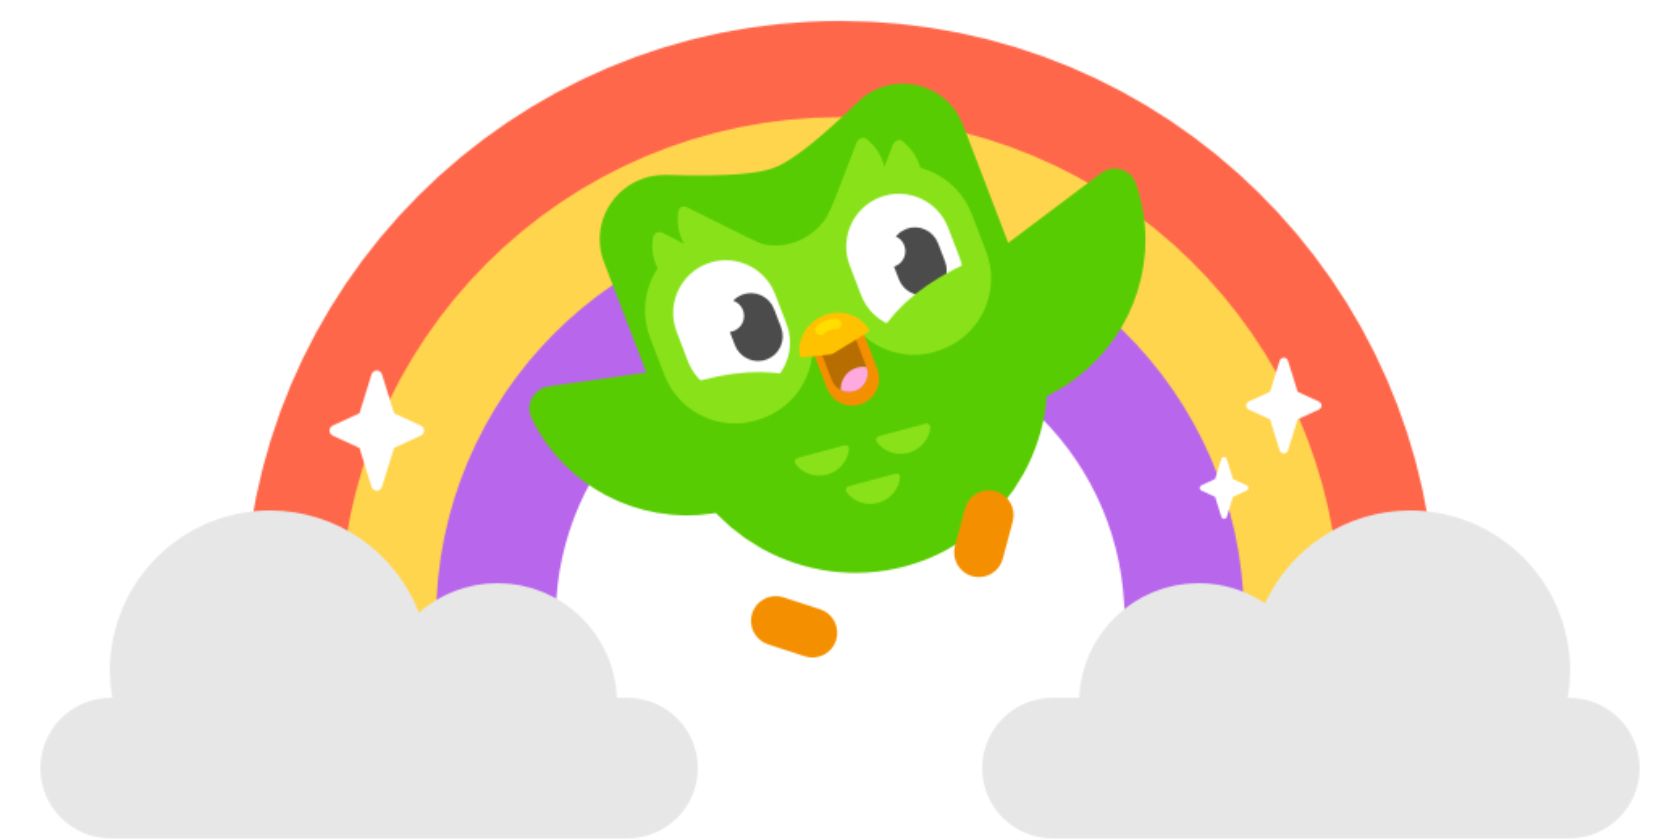 The Duolingo owl Duo dancing inside a rainbow.